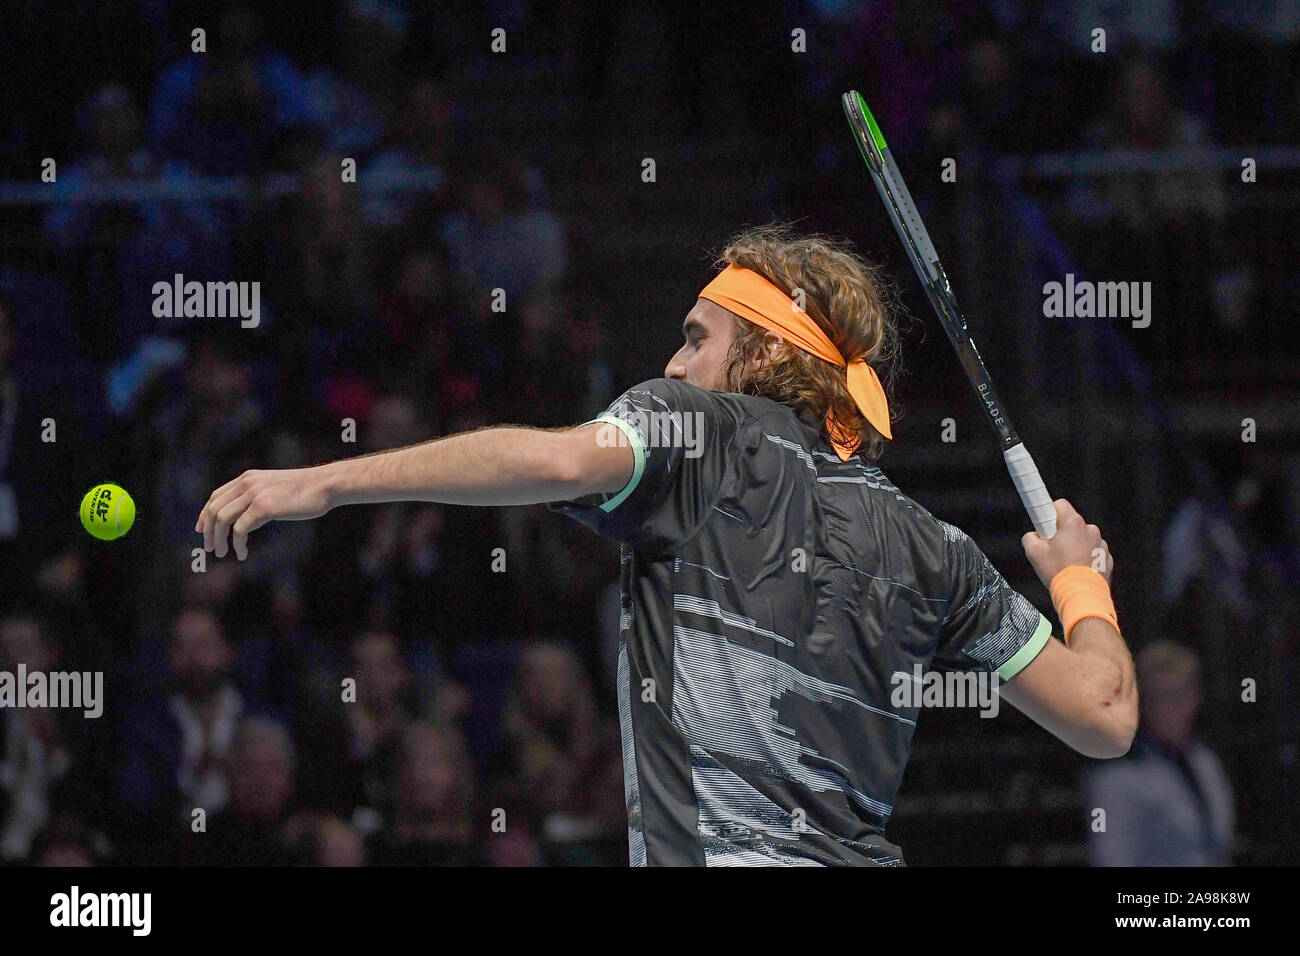 Londres, Royaume-Uni, 13 Nov 2019, stefanos tsitsipas ,le gre, lors de l'ATP Nitto STEFANOS TSITSIPAS Final Vs ALEXANDER ZVEREV - Internationaux de Tennis - Crédit : LPS/Roberto Zanettin/Alamy Live News Banque D'Images